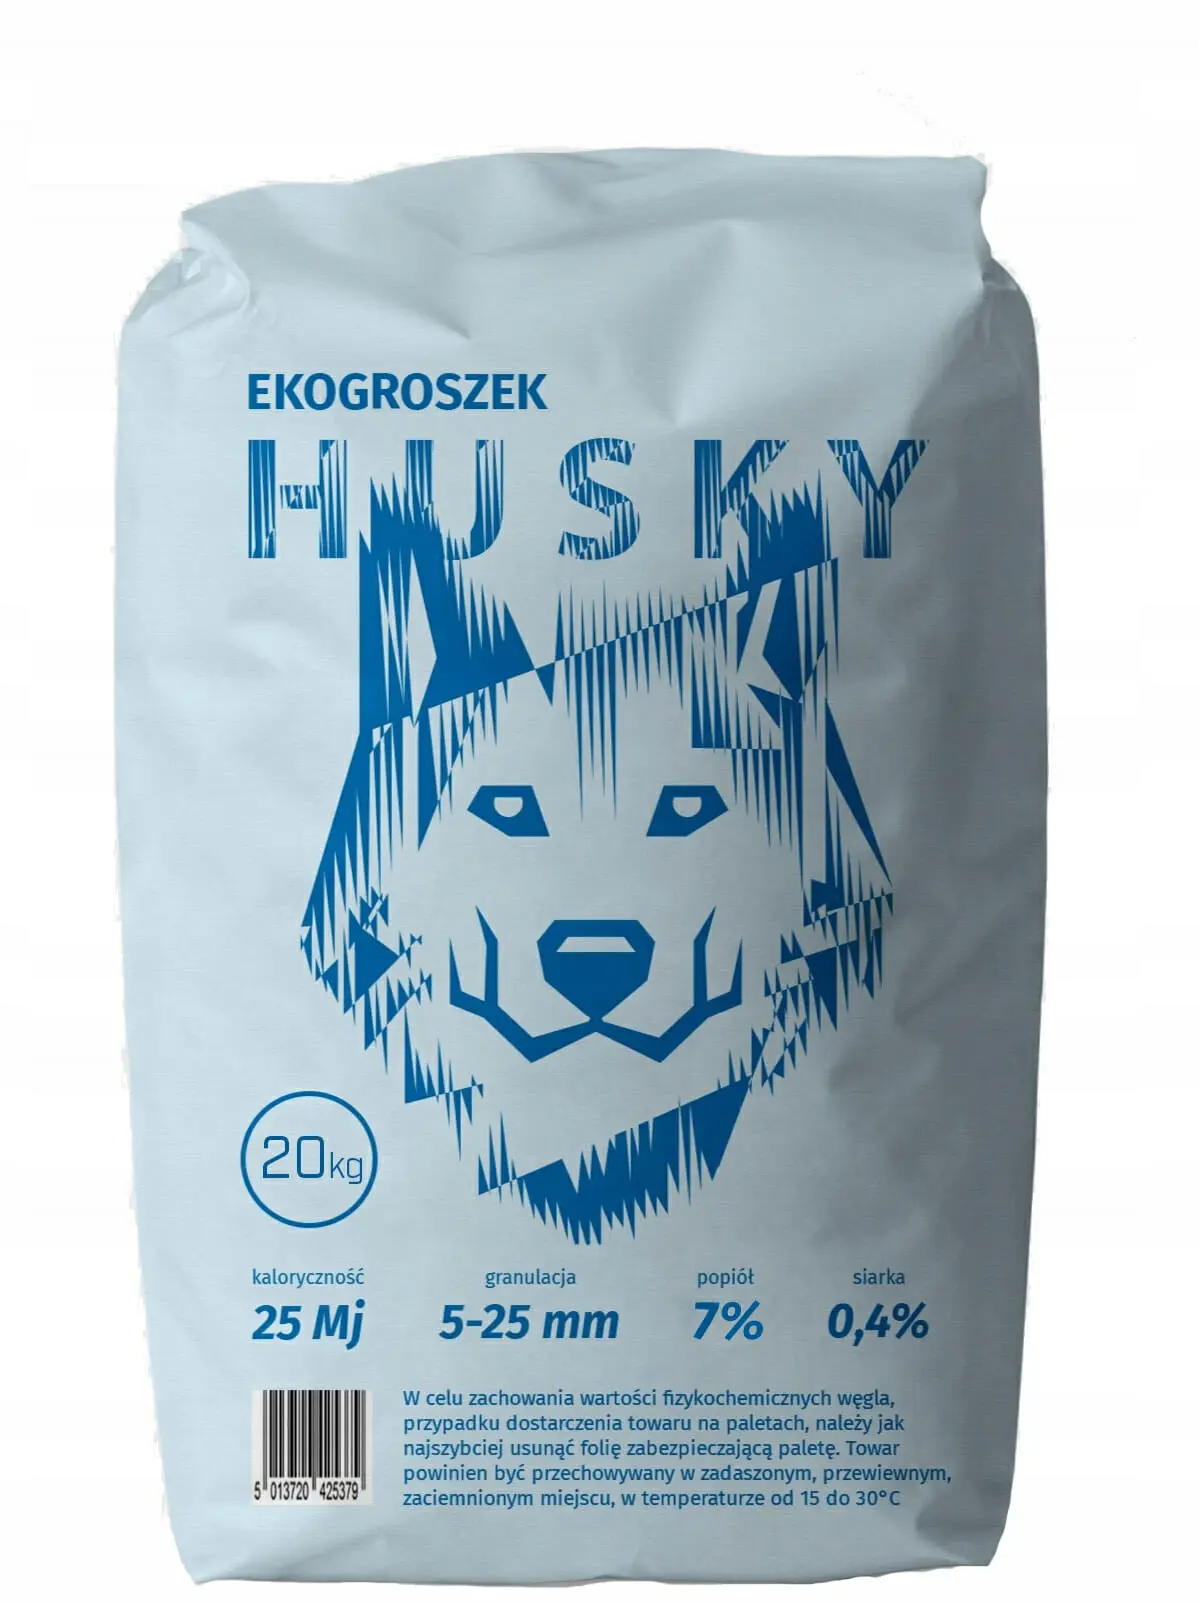 Ekogroszek Husky - sprawdzone paliwo, popularne wśród użytkowników, atrakcyjna cena.